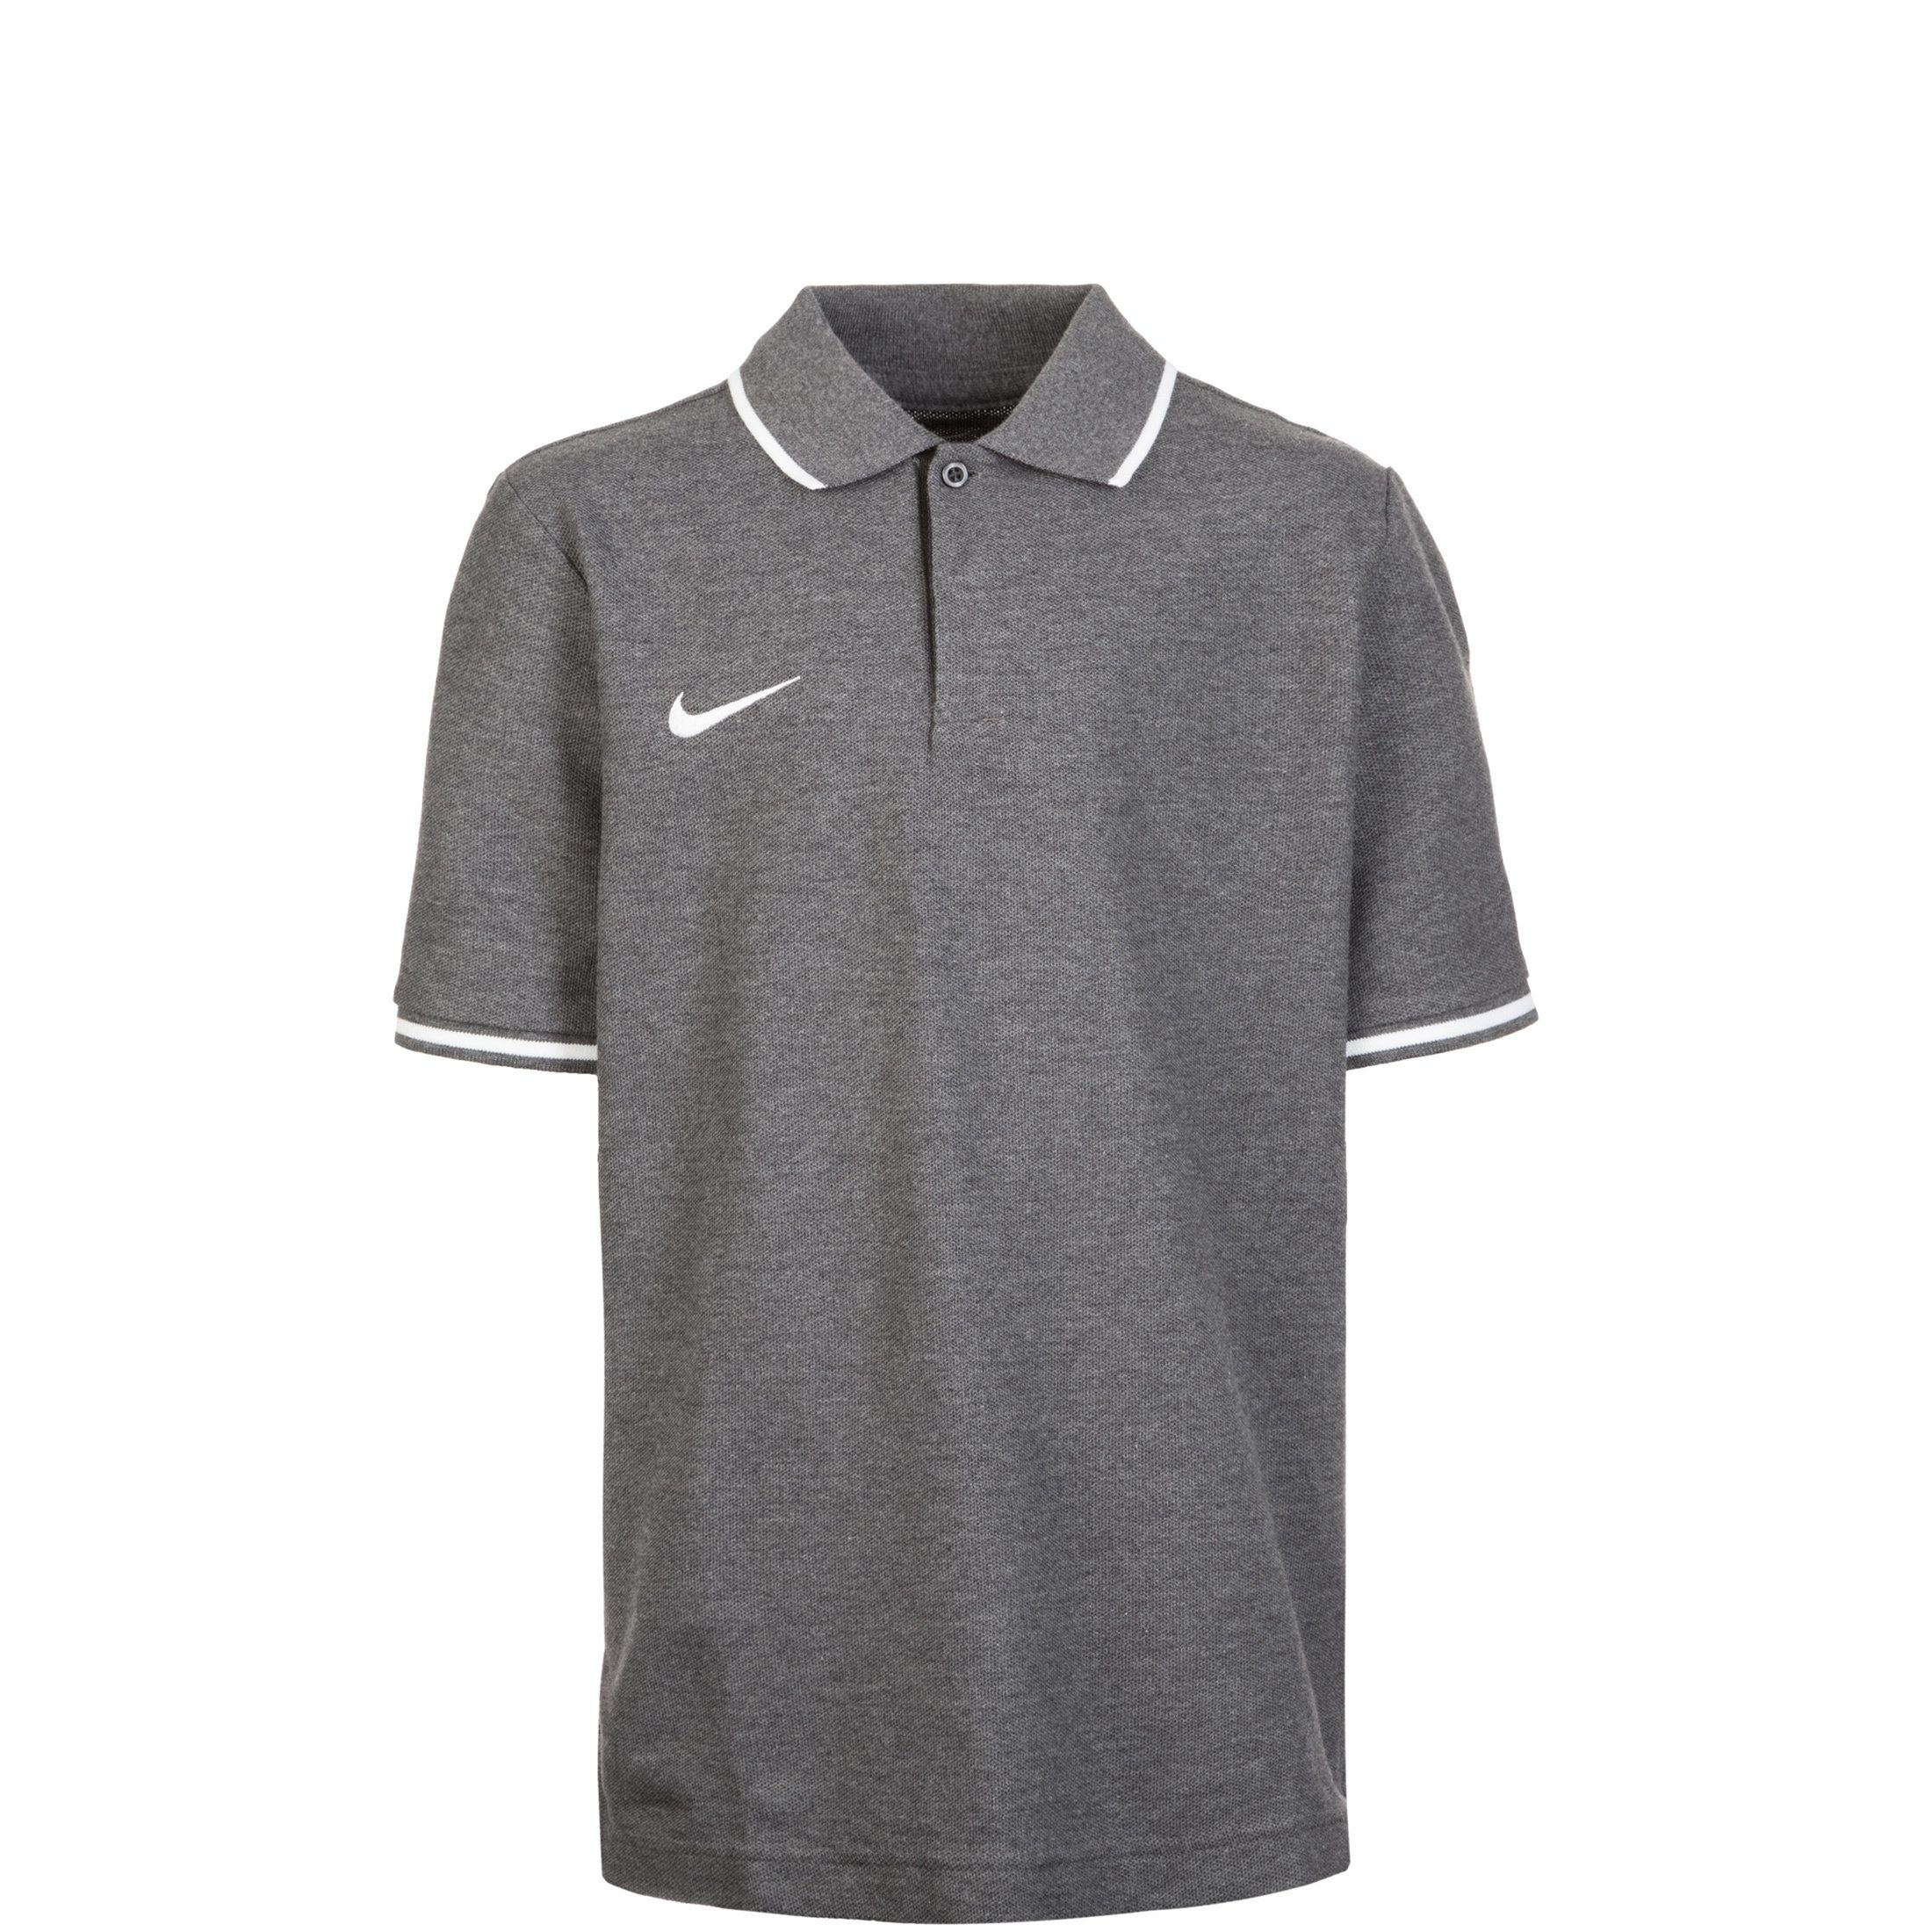 Nike Poloshirt »Club19 Tm«, Nike Club 19 Teamsport-Kollektion online kaufen  | OTTO